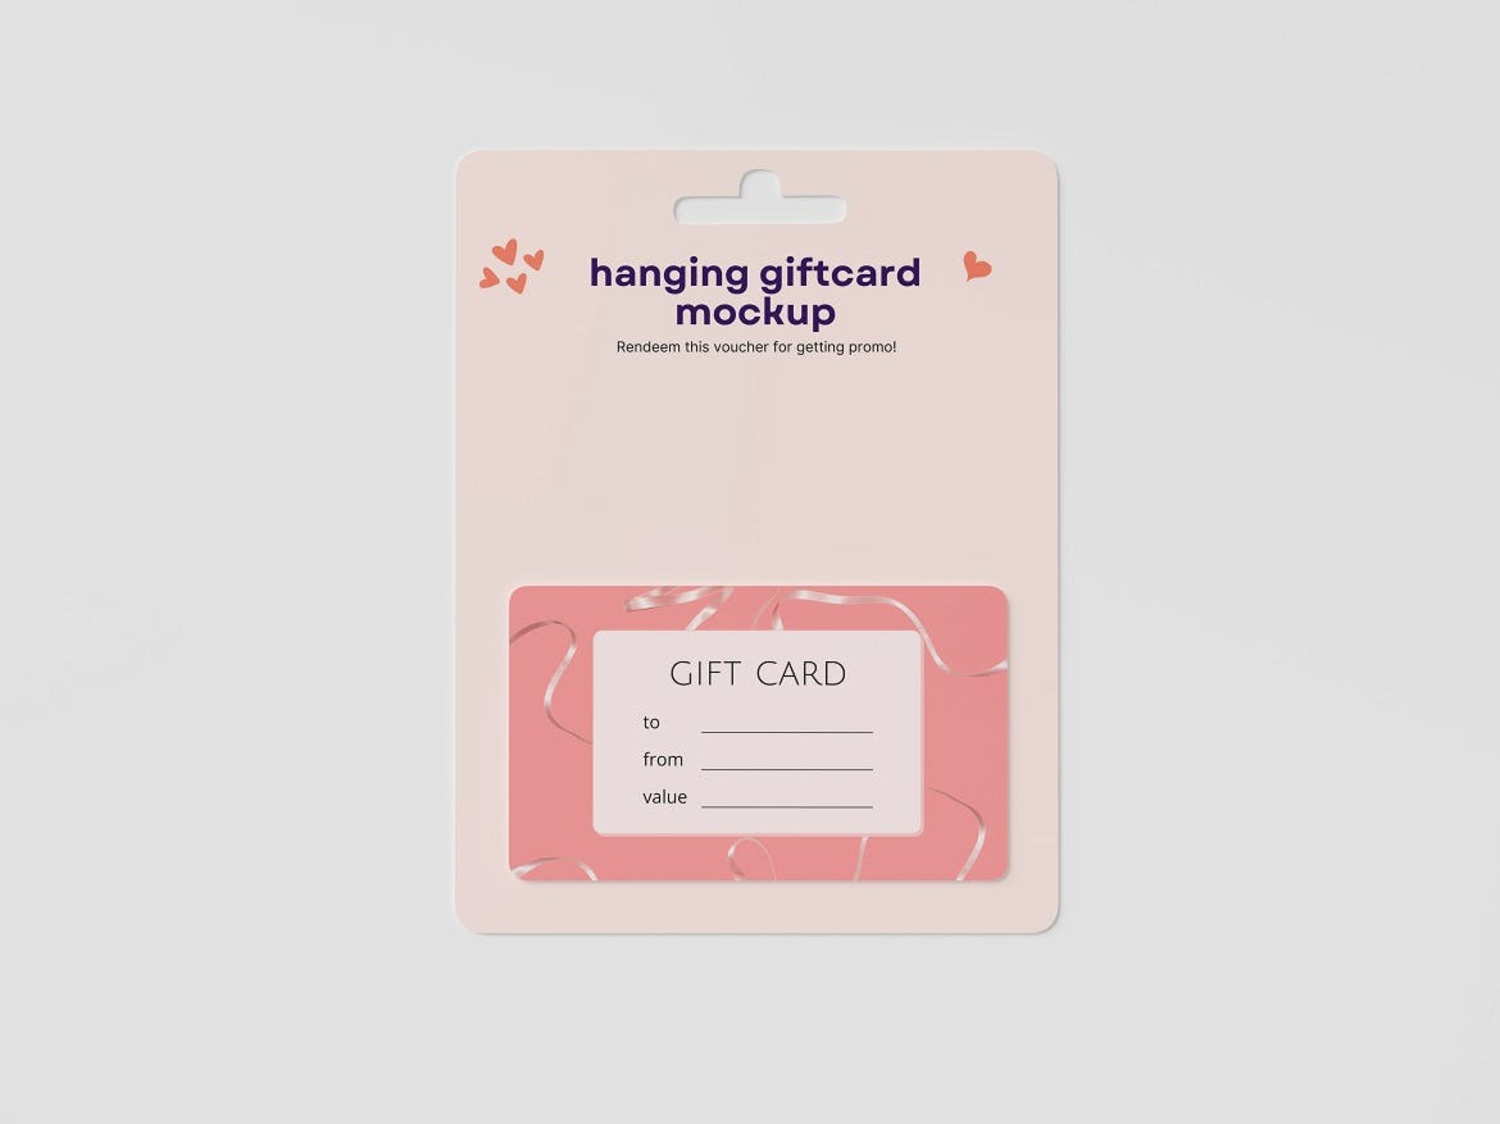 6293 环保材料挂耳礼品卡设计展示样机-hanging giftcard mockup